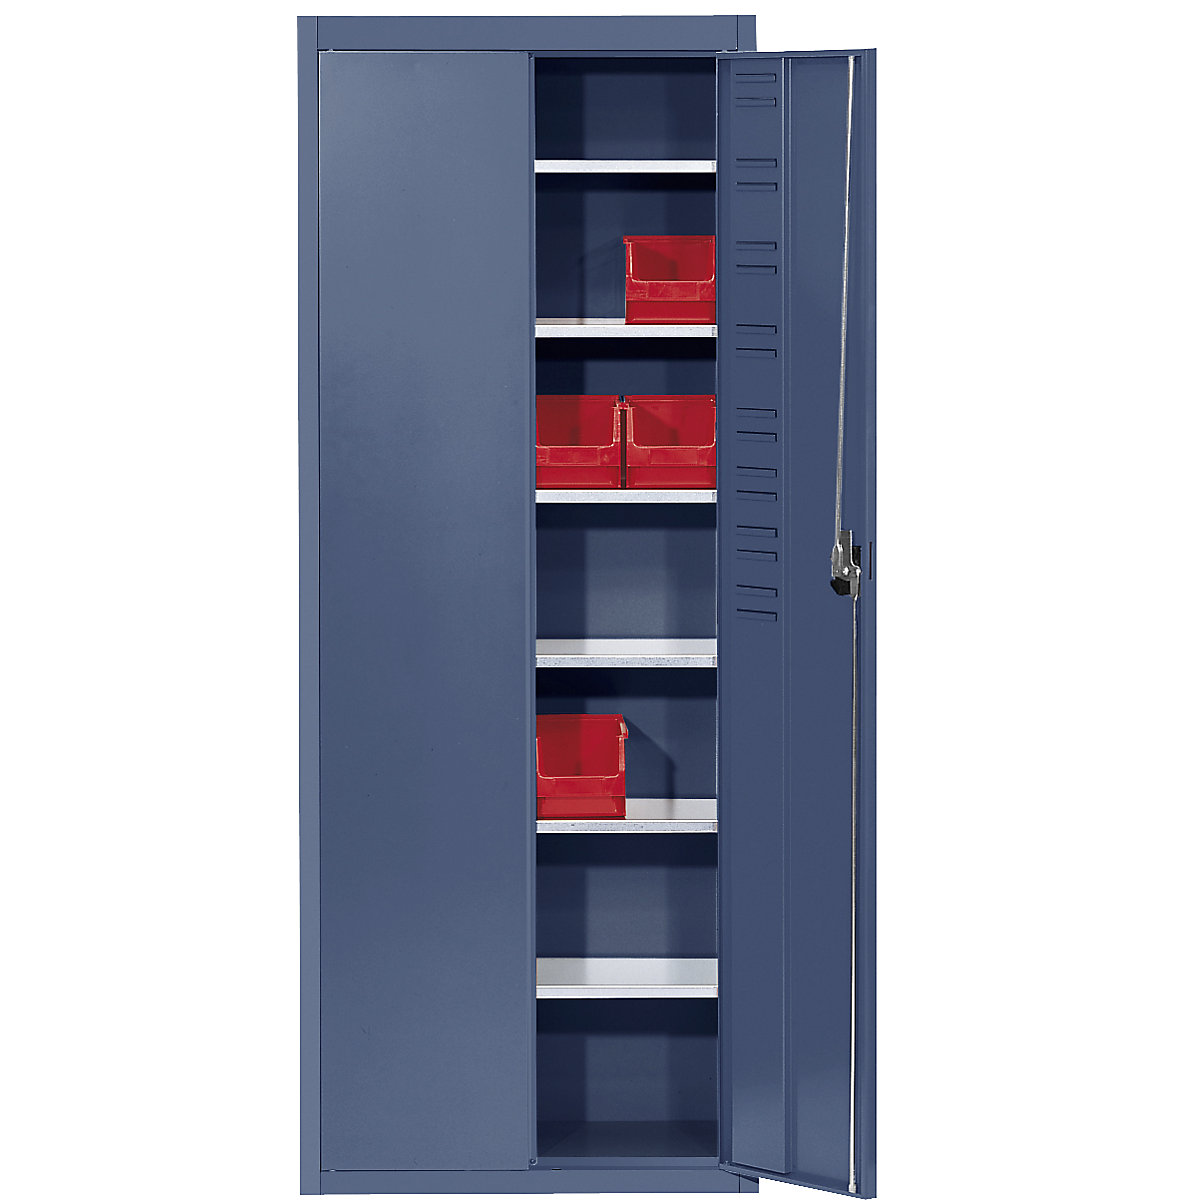 Skladišni ormar bez otvorenih skladišnih kutija – mauser, VxŠxD 1740 x 680 x 280 mm, u jednoj boji, u briljant plavoj boji-9